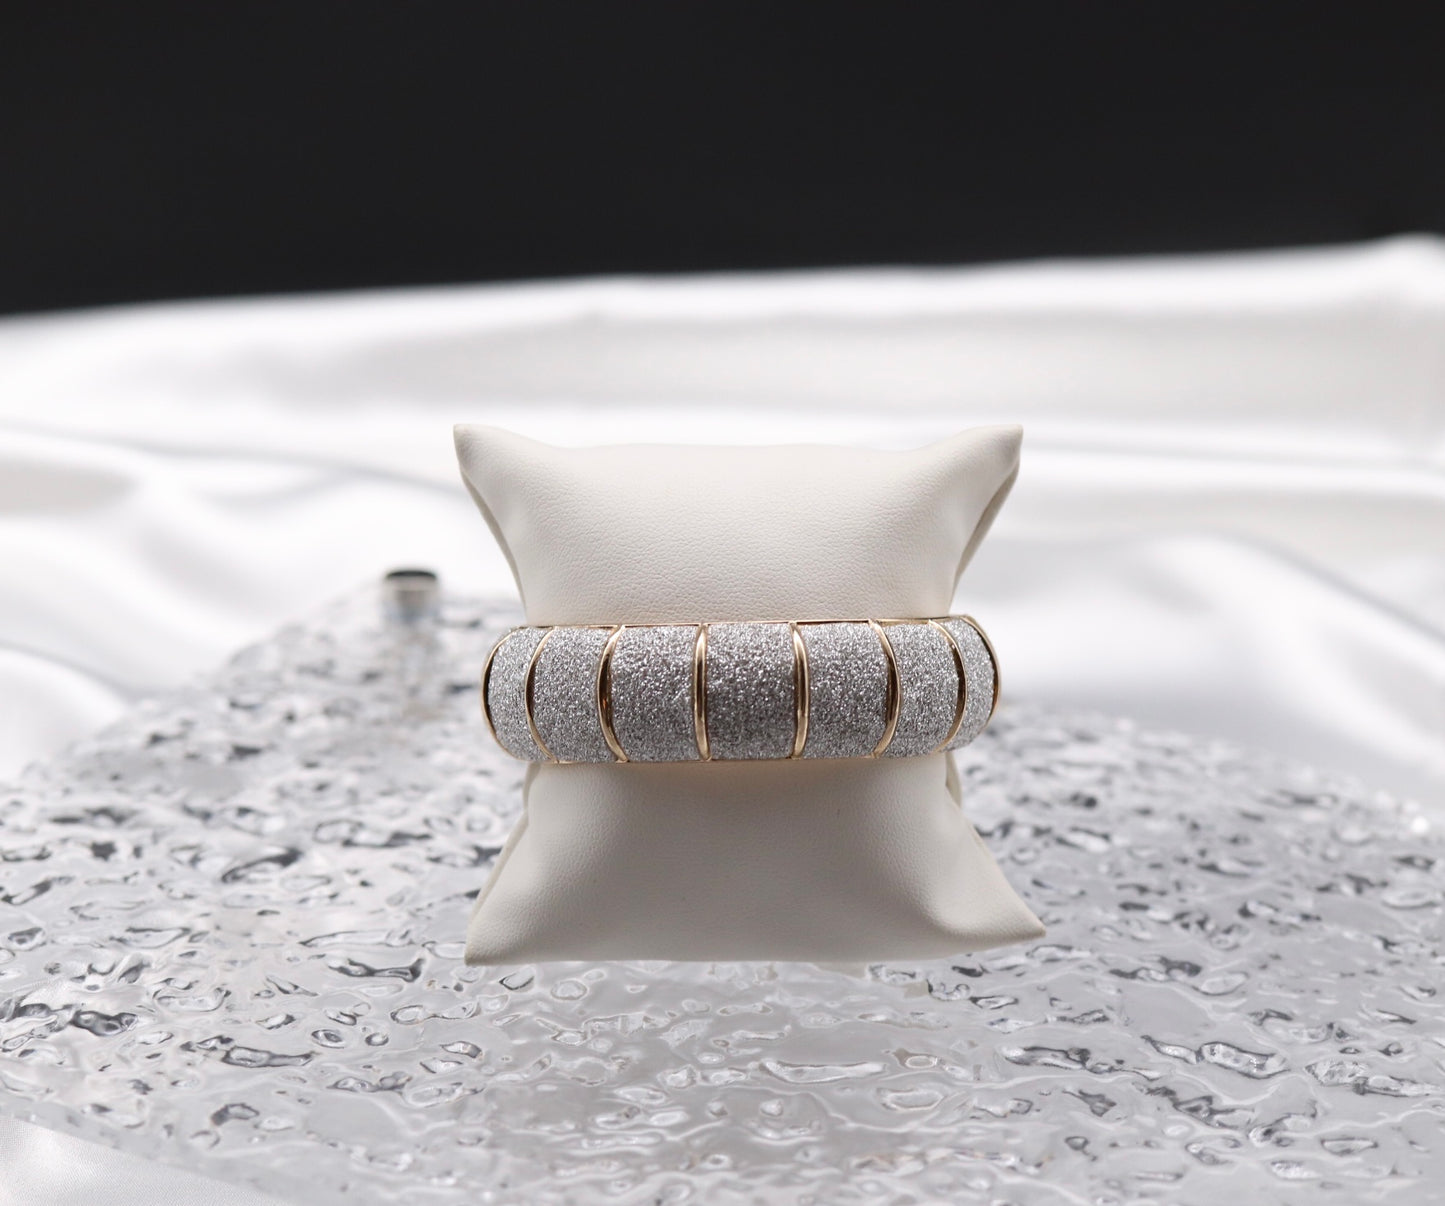 Sparkling Silver Hinge Bracelet with Gold Trim